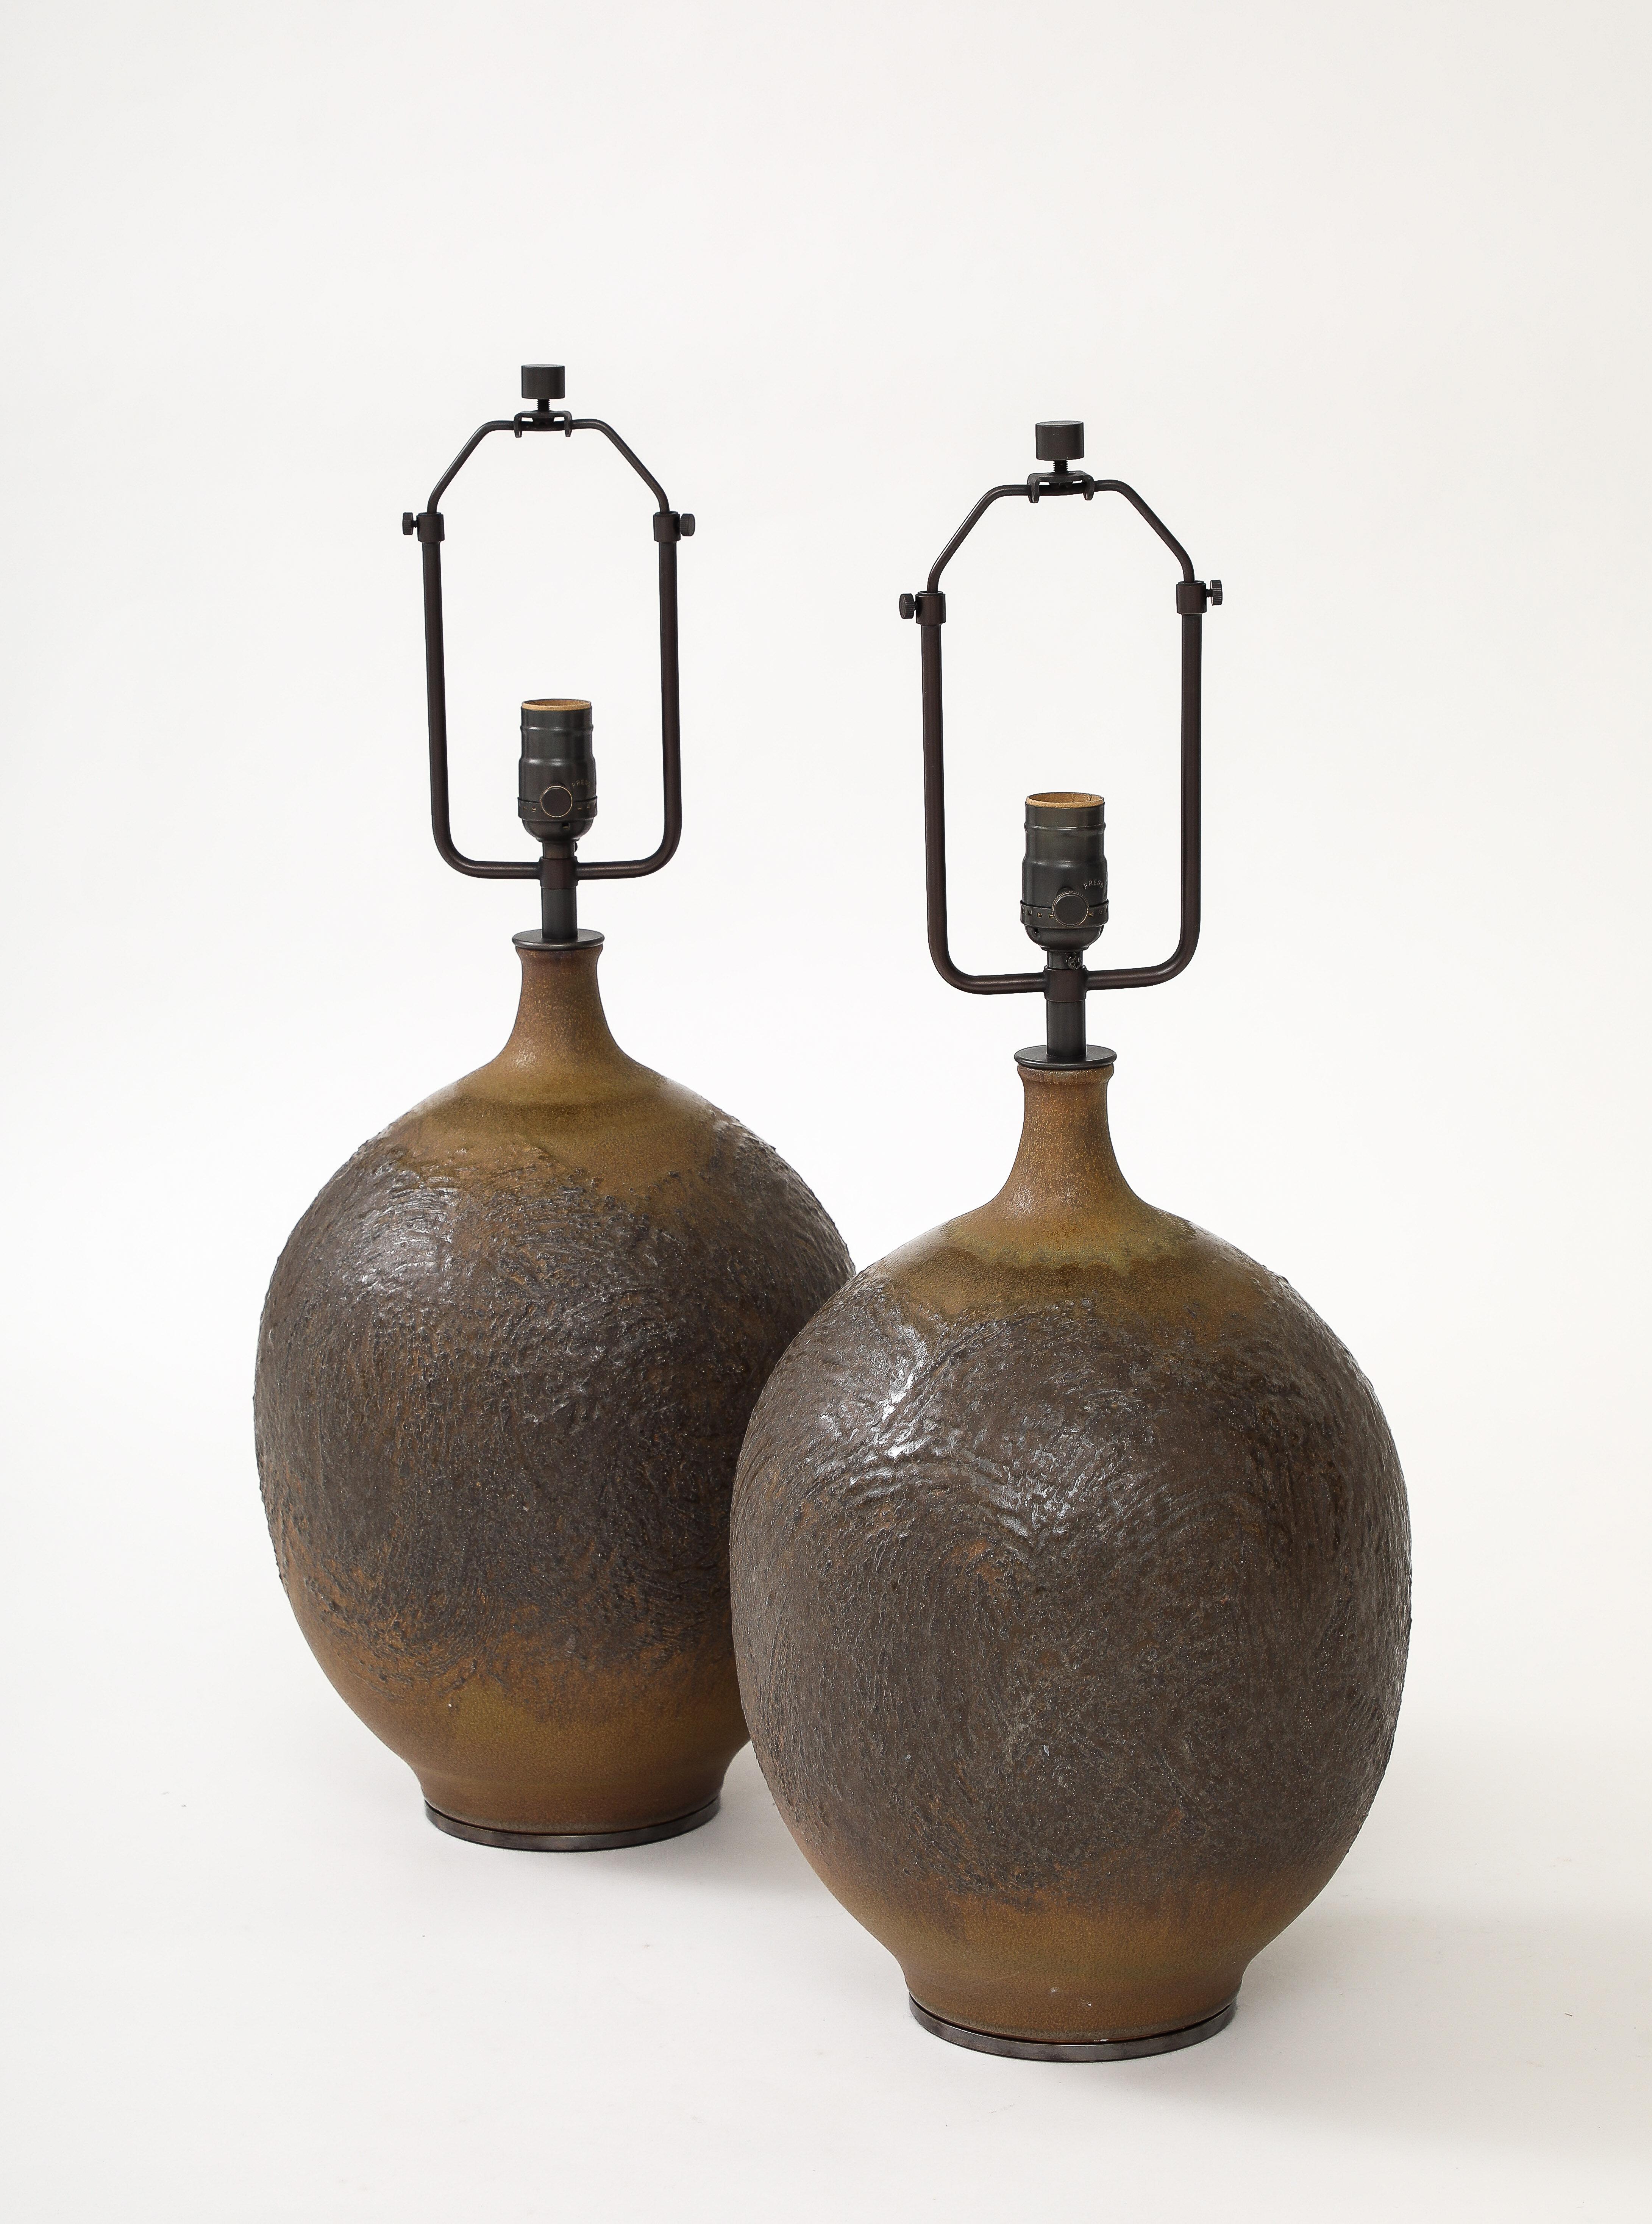 Ces lampes de table en céramique émaillée ont un ton et une texture magnifiques ; on dirait presque qu'elles sont en bronze coulé.